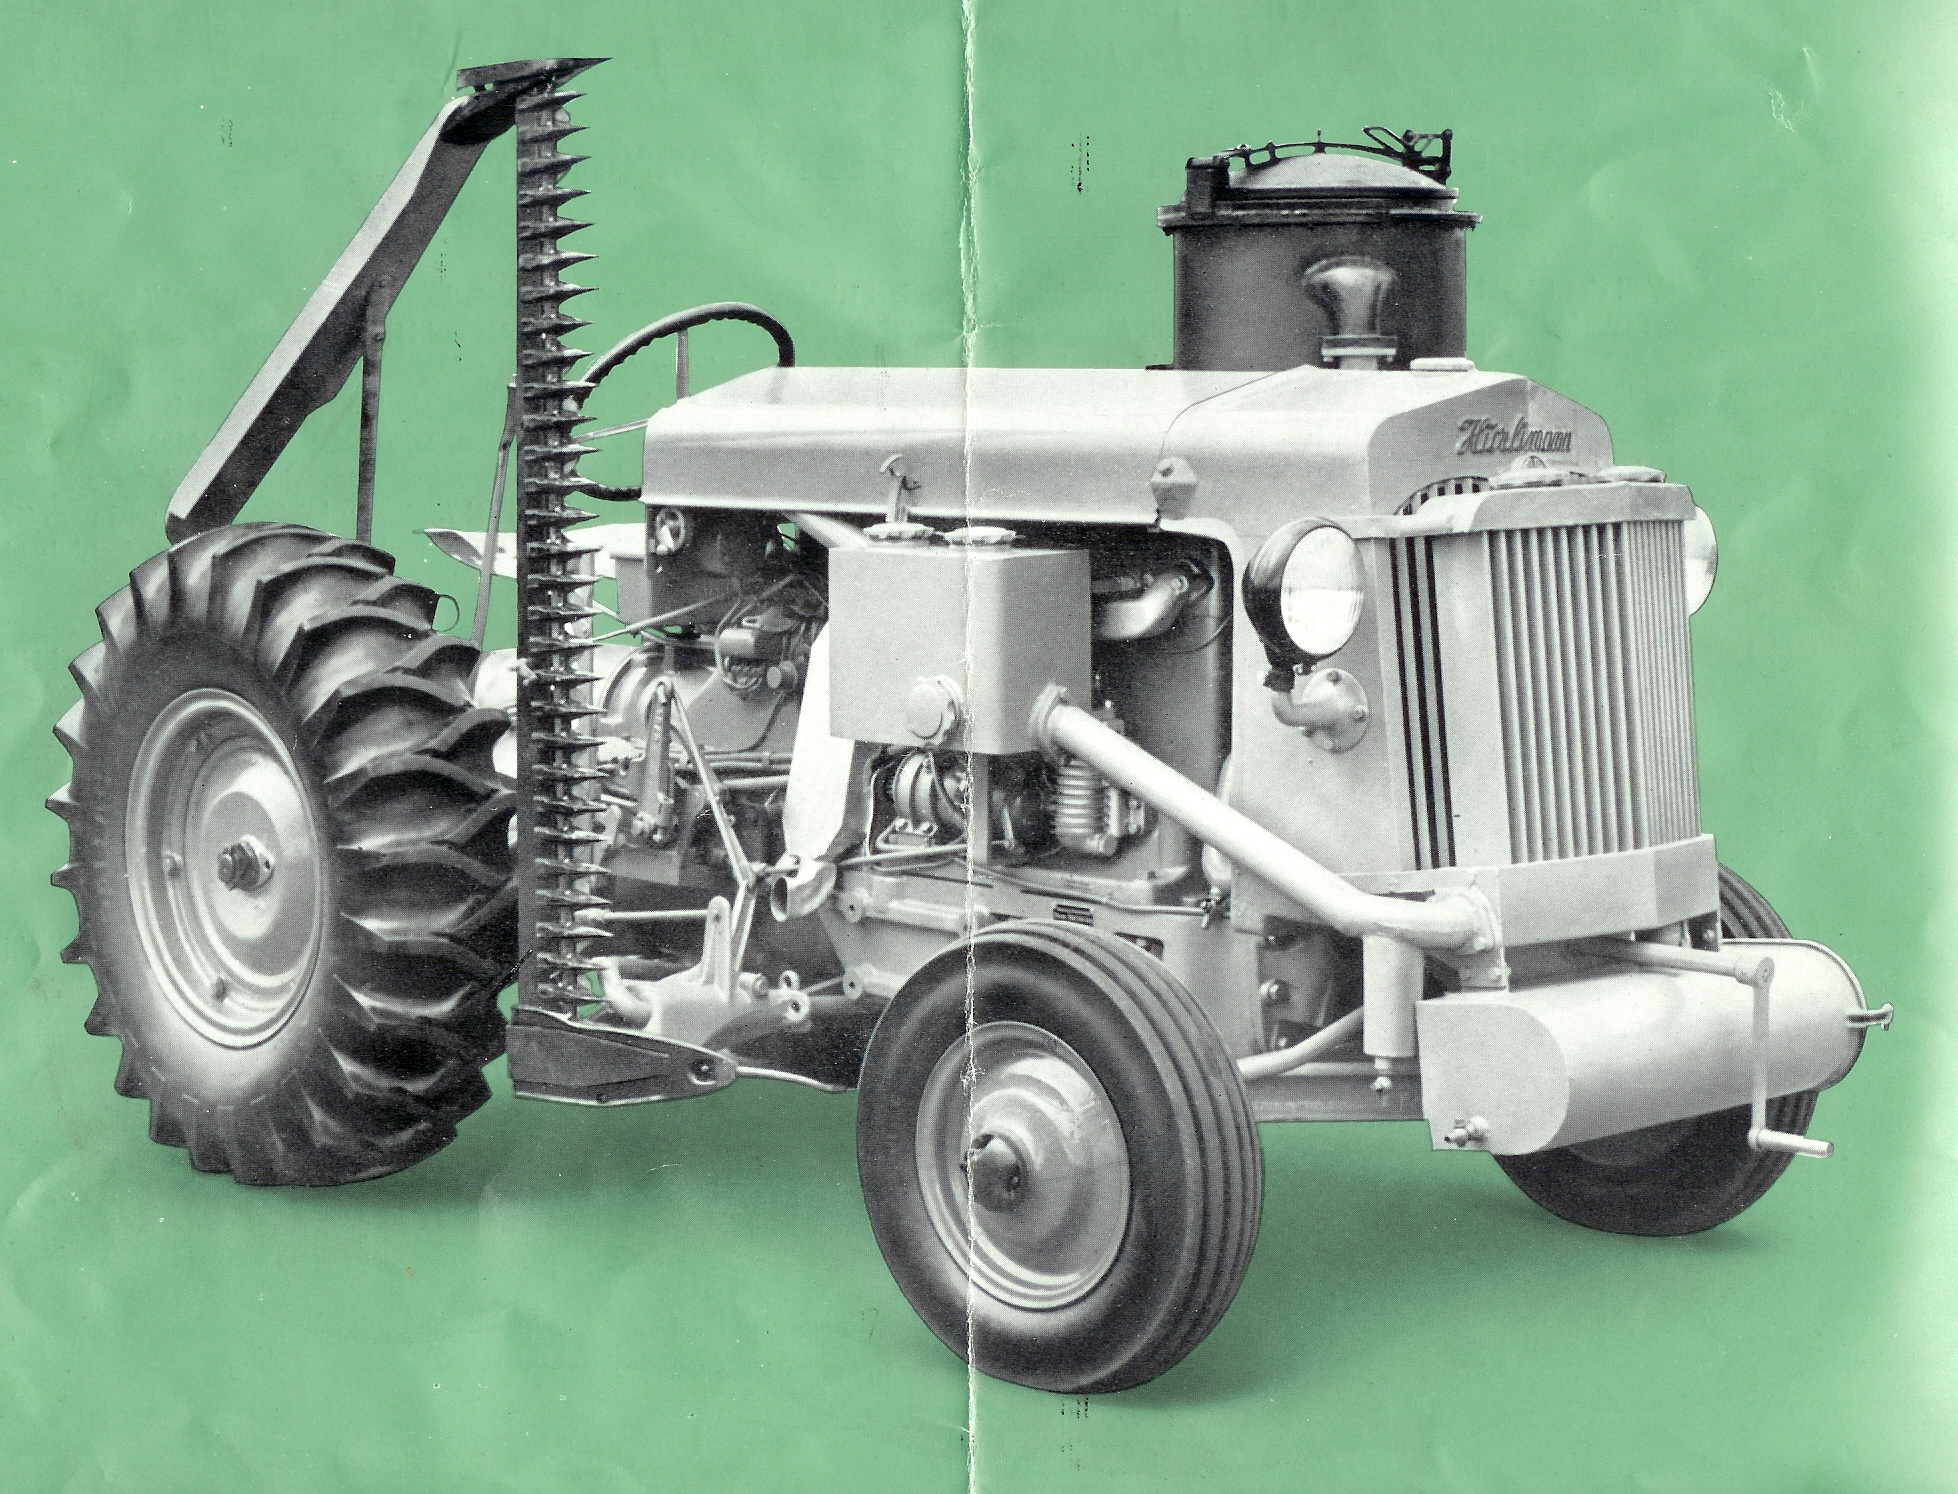 Hürlimann Traktoren - ausführliche Chronik 1929 bis 1983